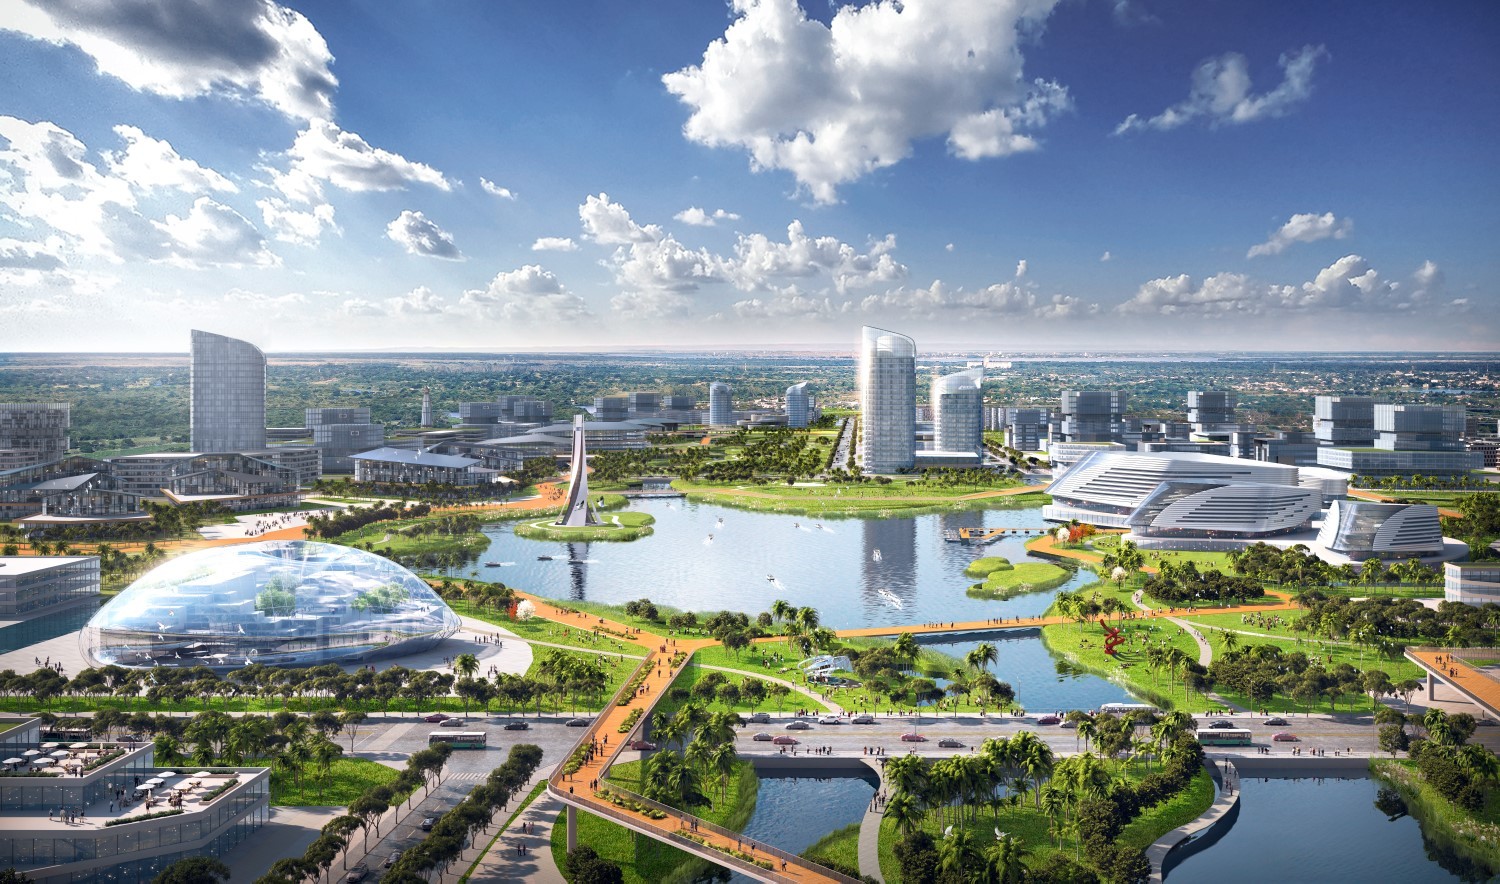 文昌国际航天城起步区一期建设加速 已启动三个单体项目施工